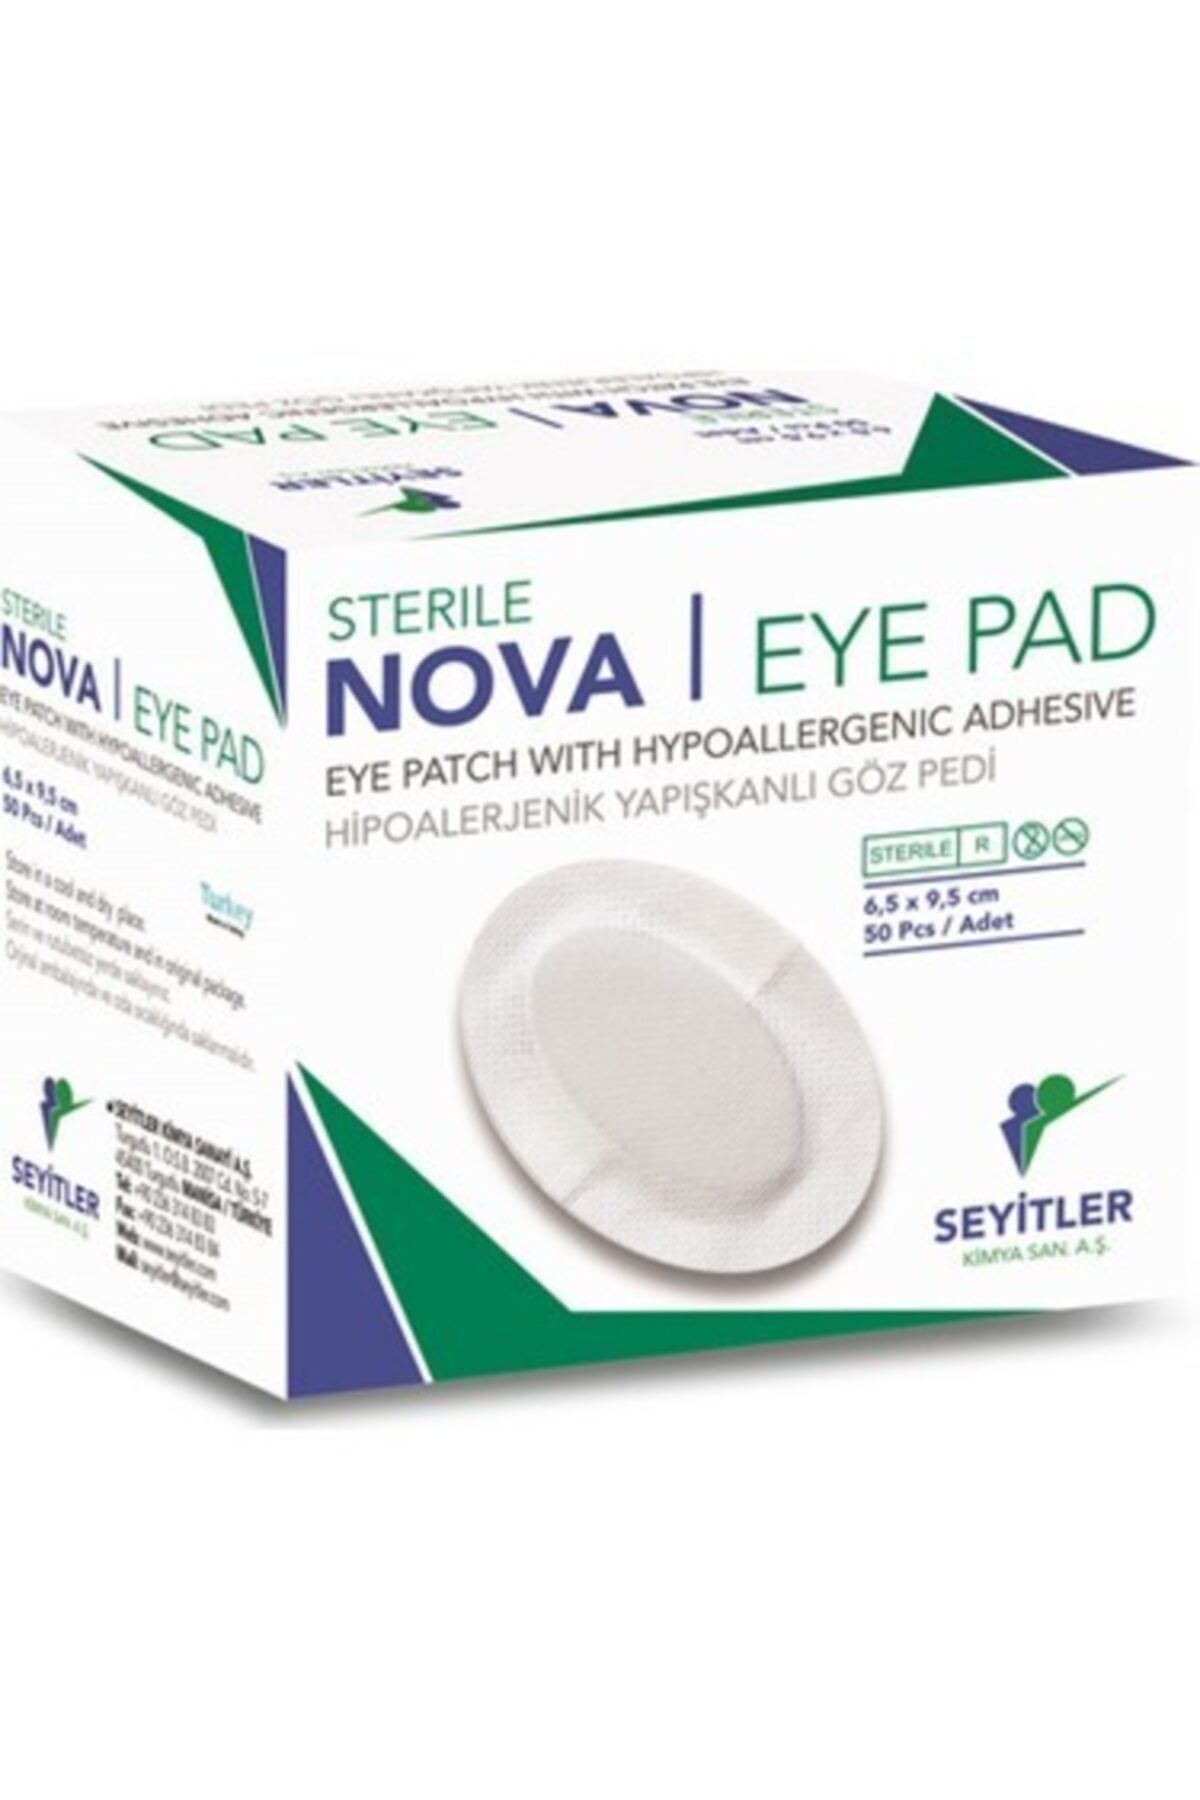 Nova Eye Pad Hipoalerjenik Yapışkanlı Göz Pedi